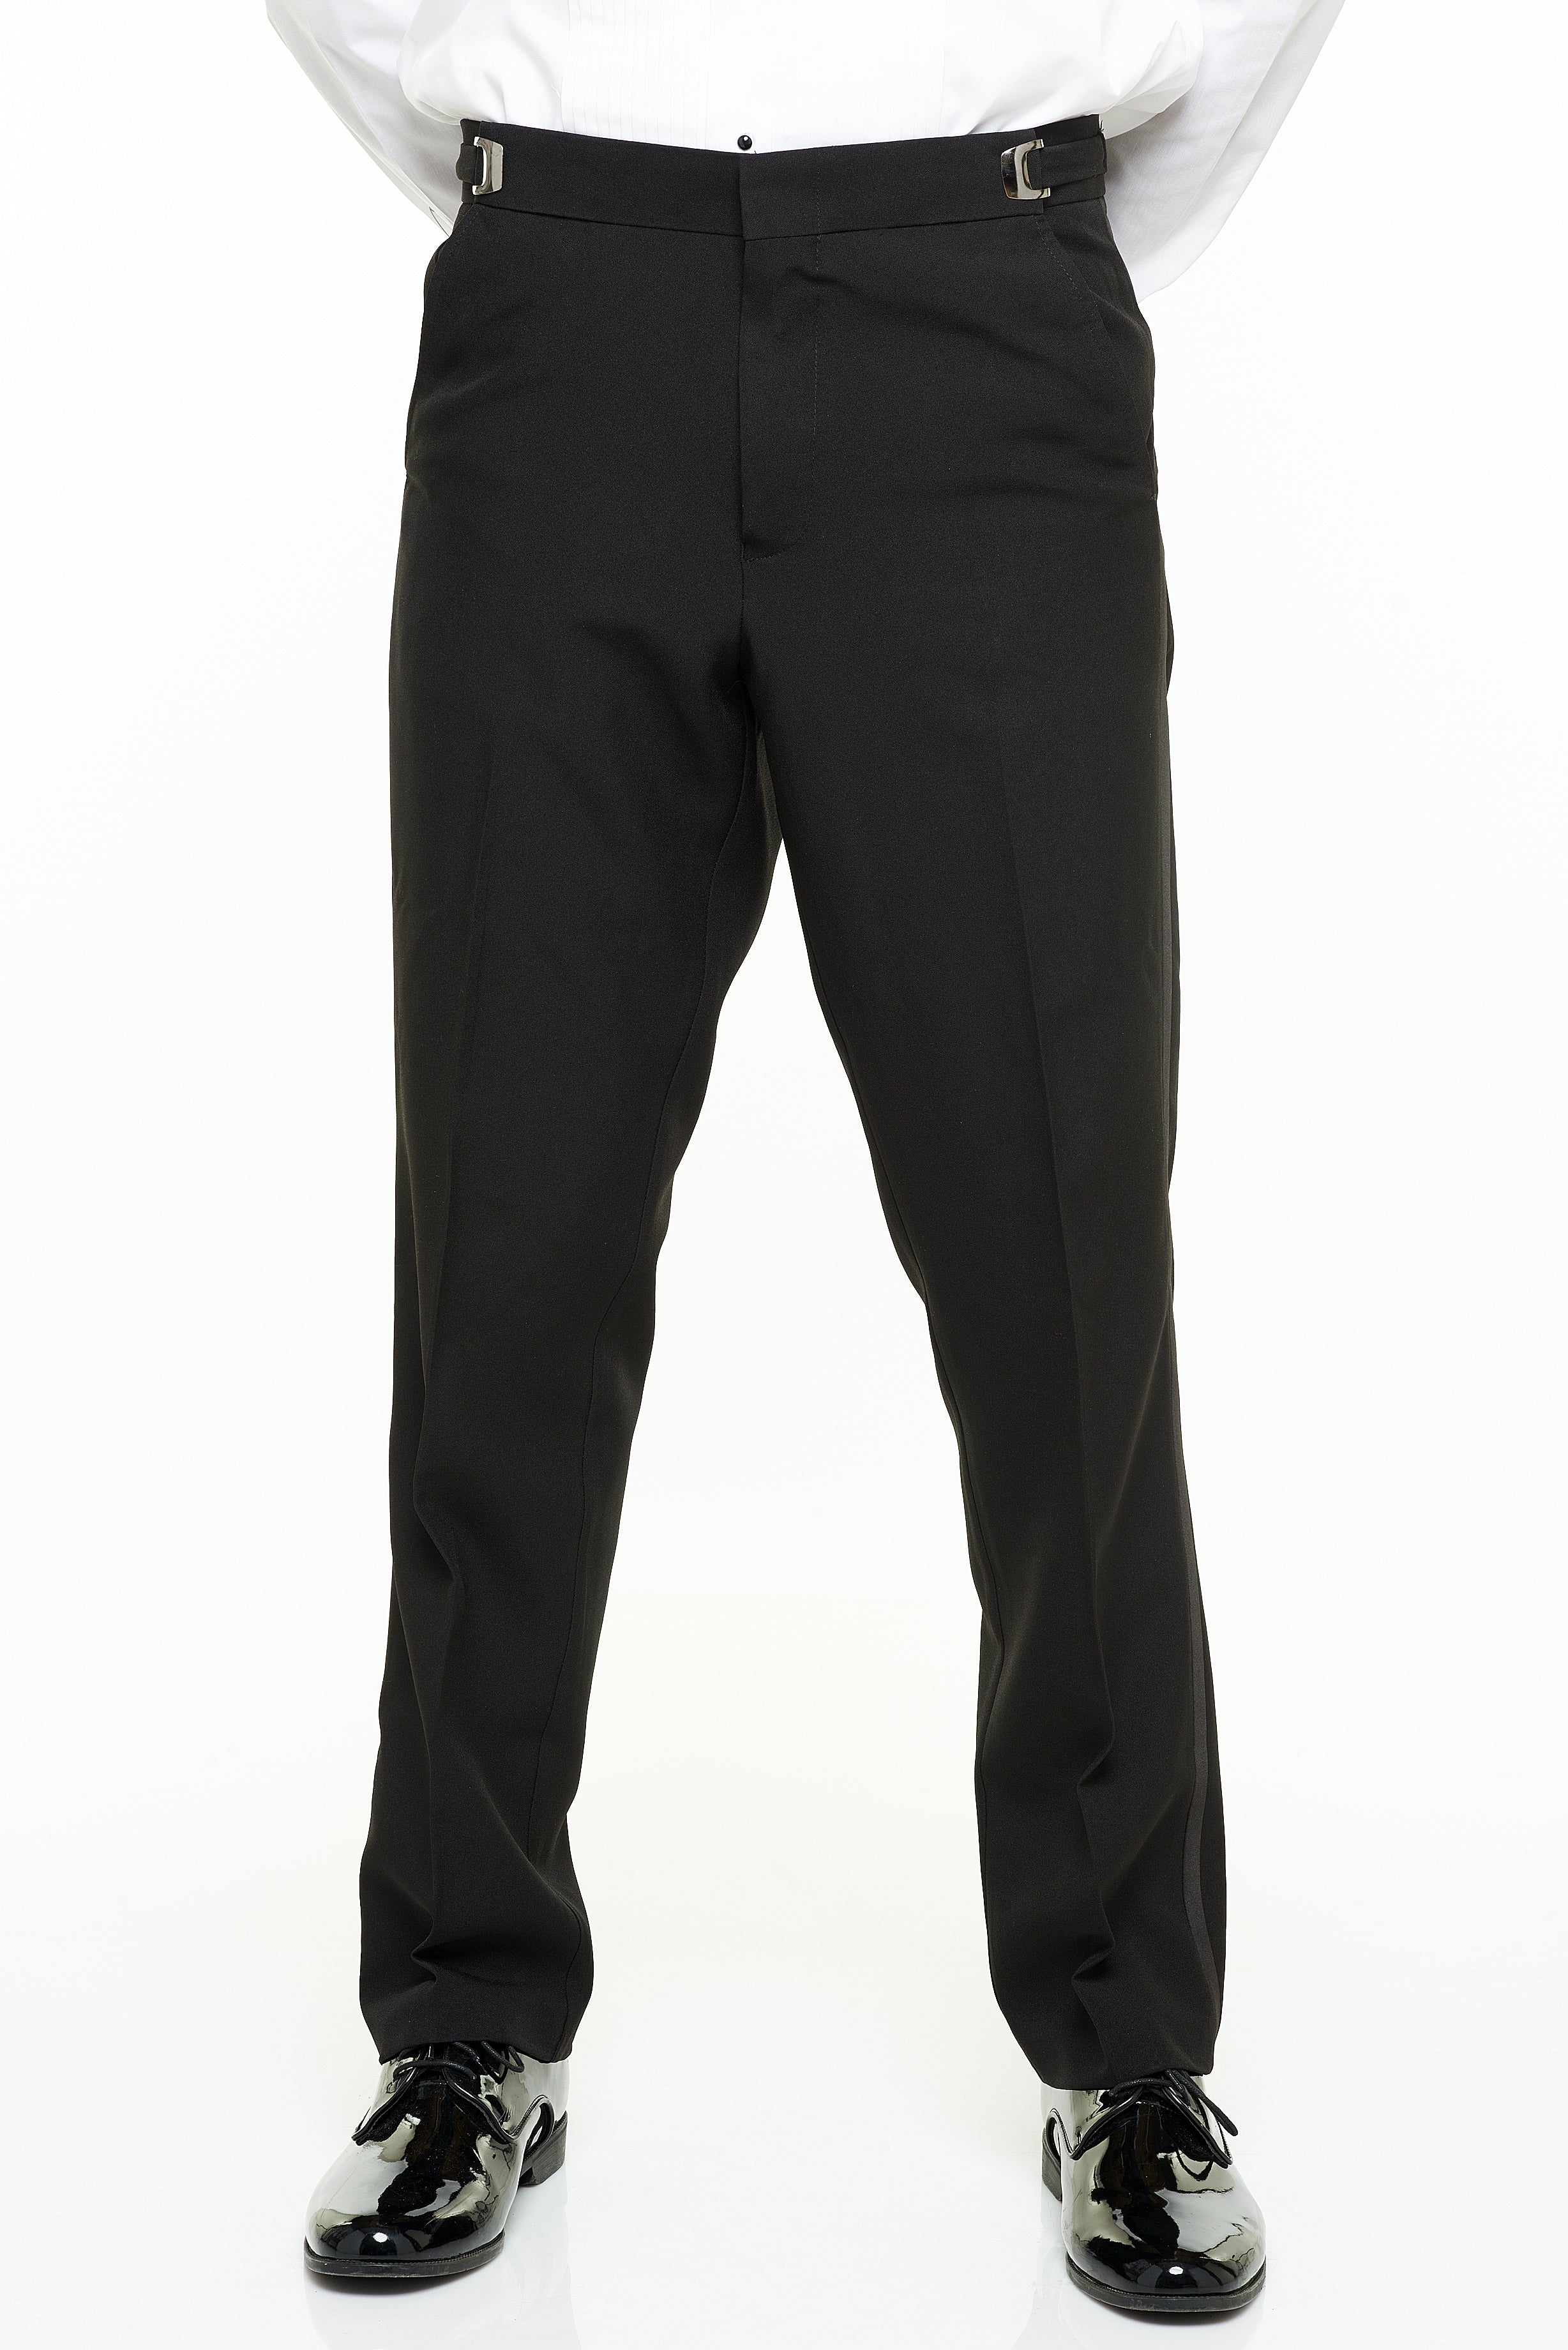 Men's White Adjustable Tuxedo Pants, Polyester – Tuxedo Closeouts